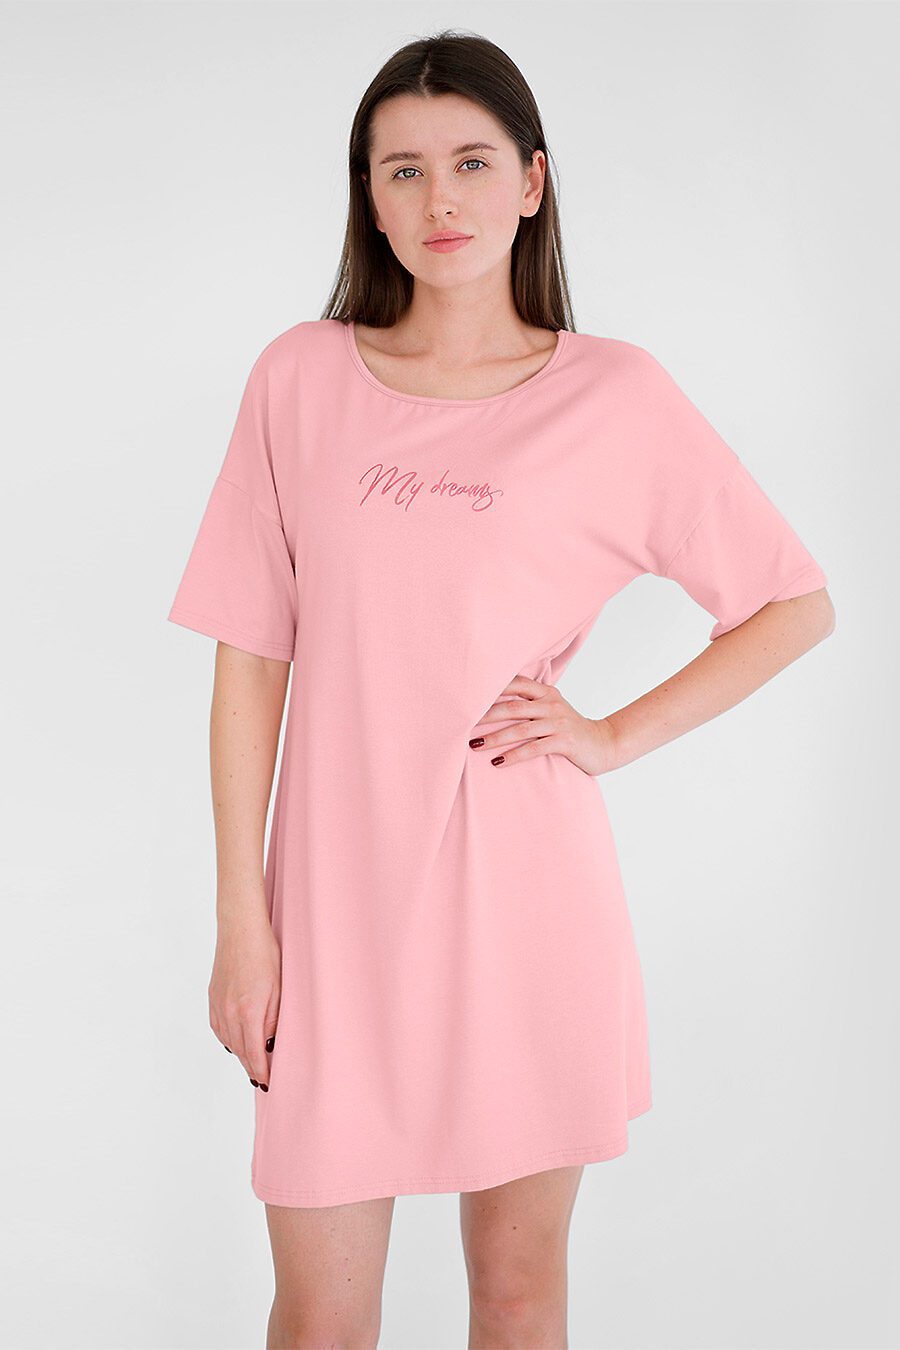 Сорочка для женщин BOSSA NOVA 708536 купить оптом от производителя. Совместная покупка женской одежды в OptMoyo